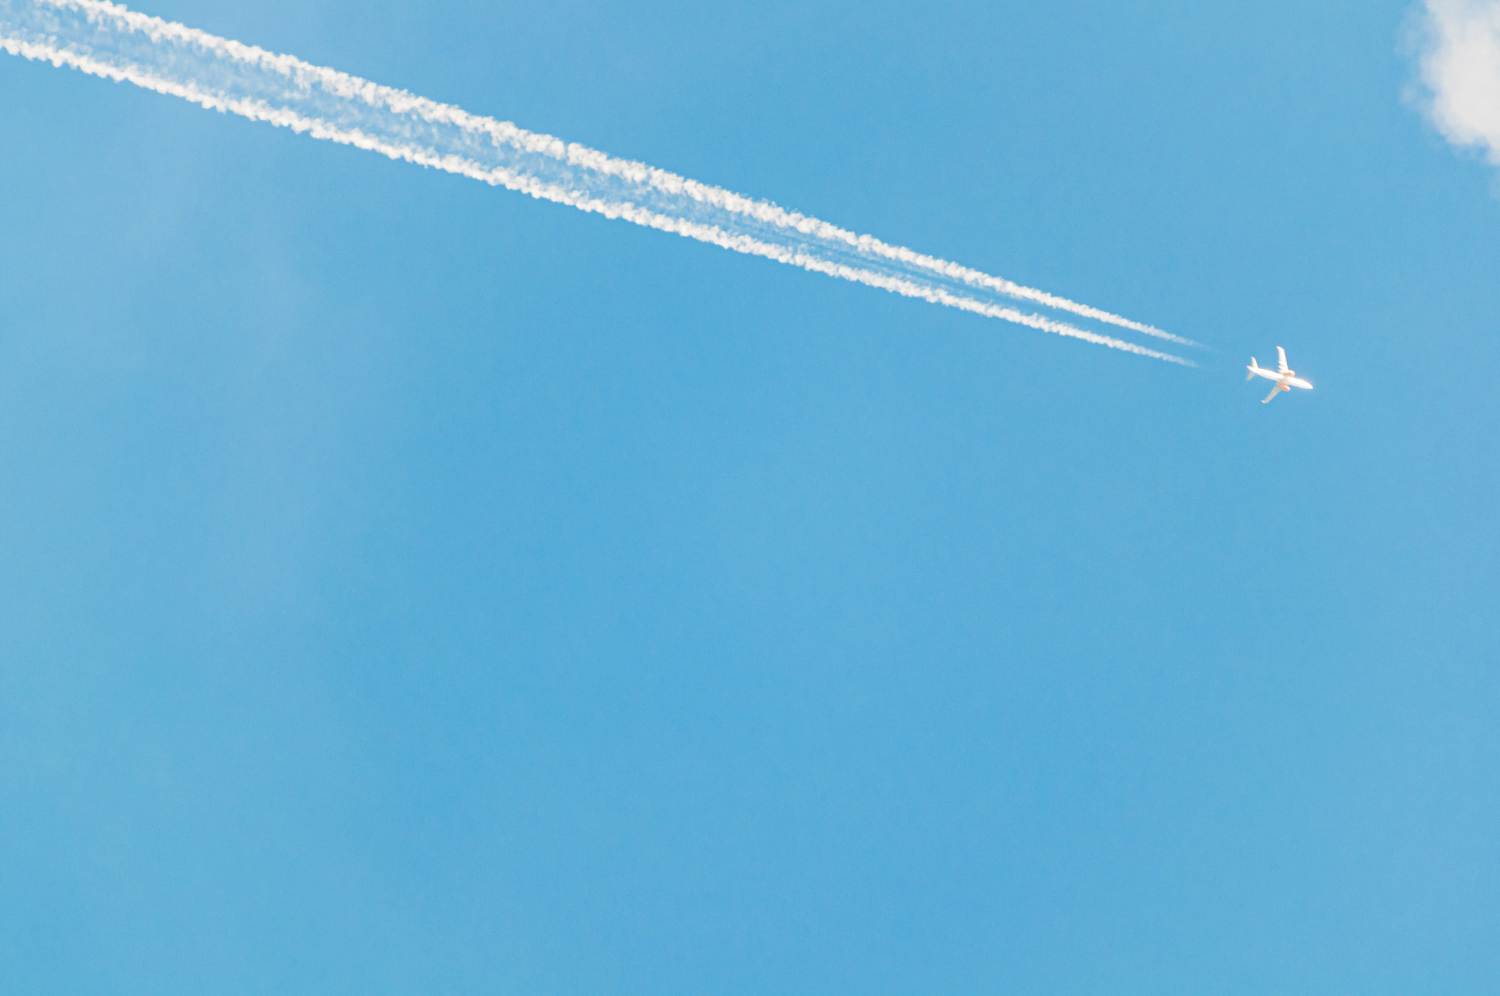 Industria aviatică generează 2-3% din totalul emisiilor de CO2 la nivel mondial